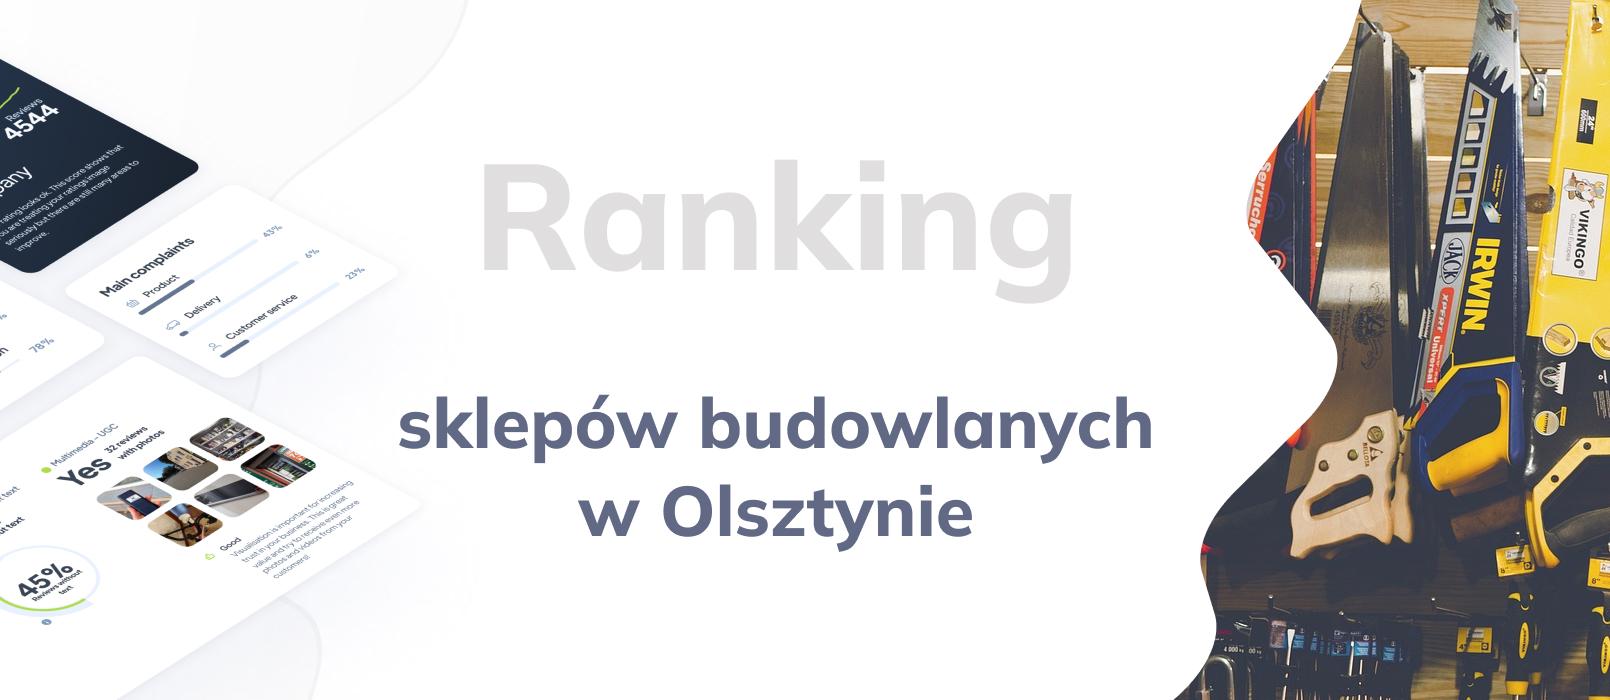 Sklepy budowlane w Olsztynie - ranking TOP 10